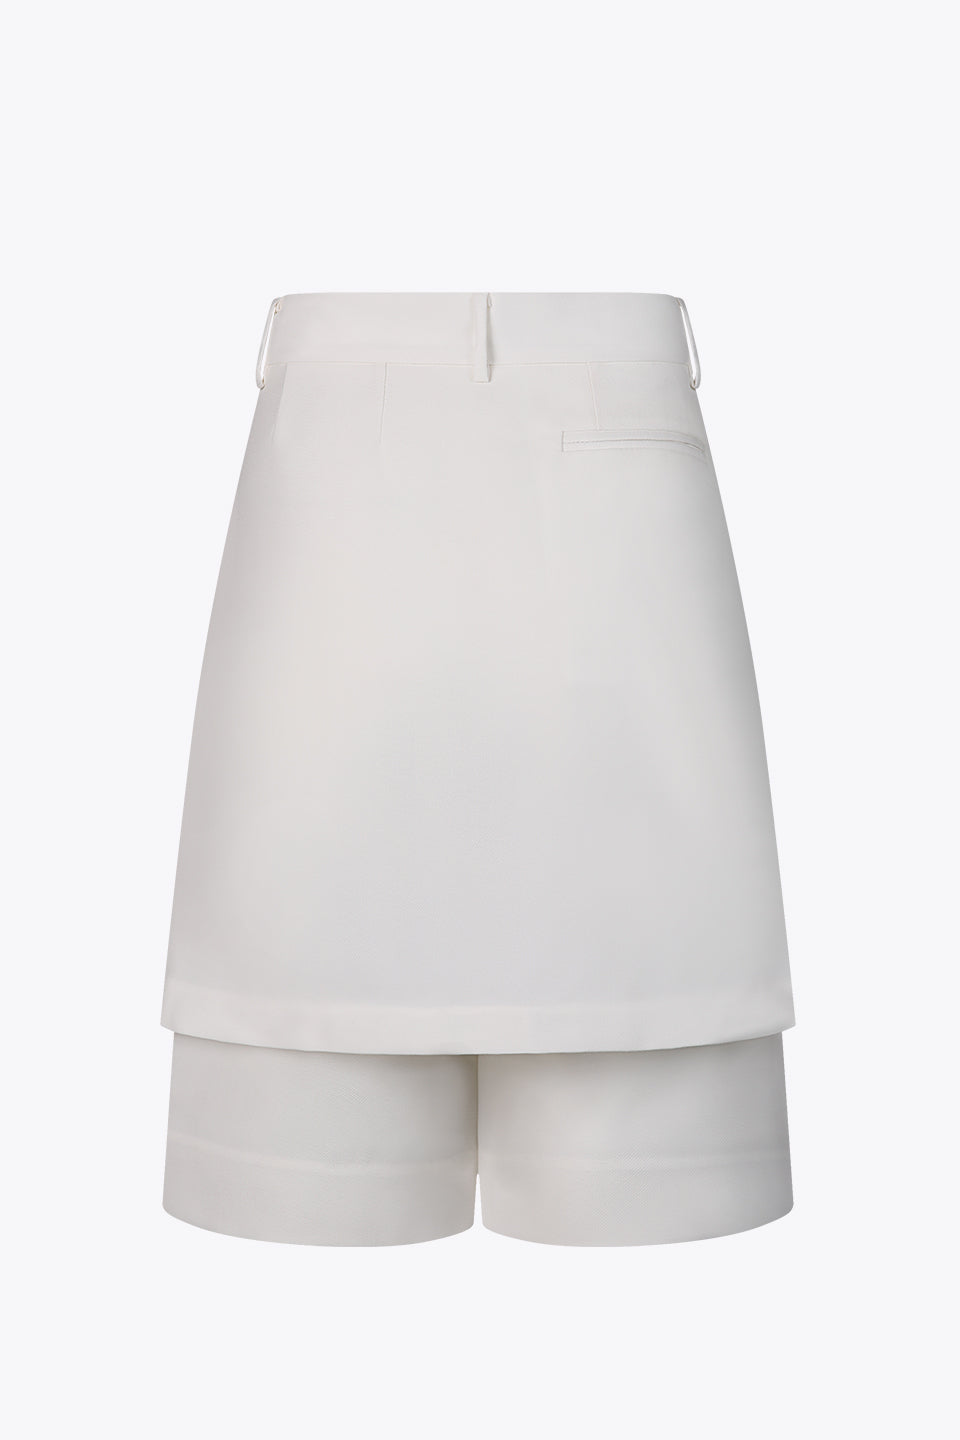 Elegant Shorts (Cream)